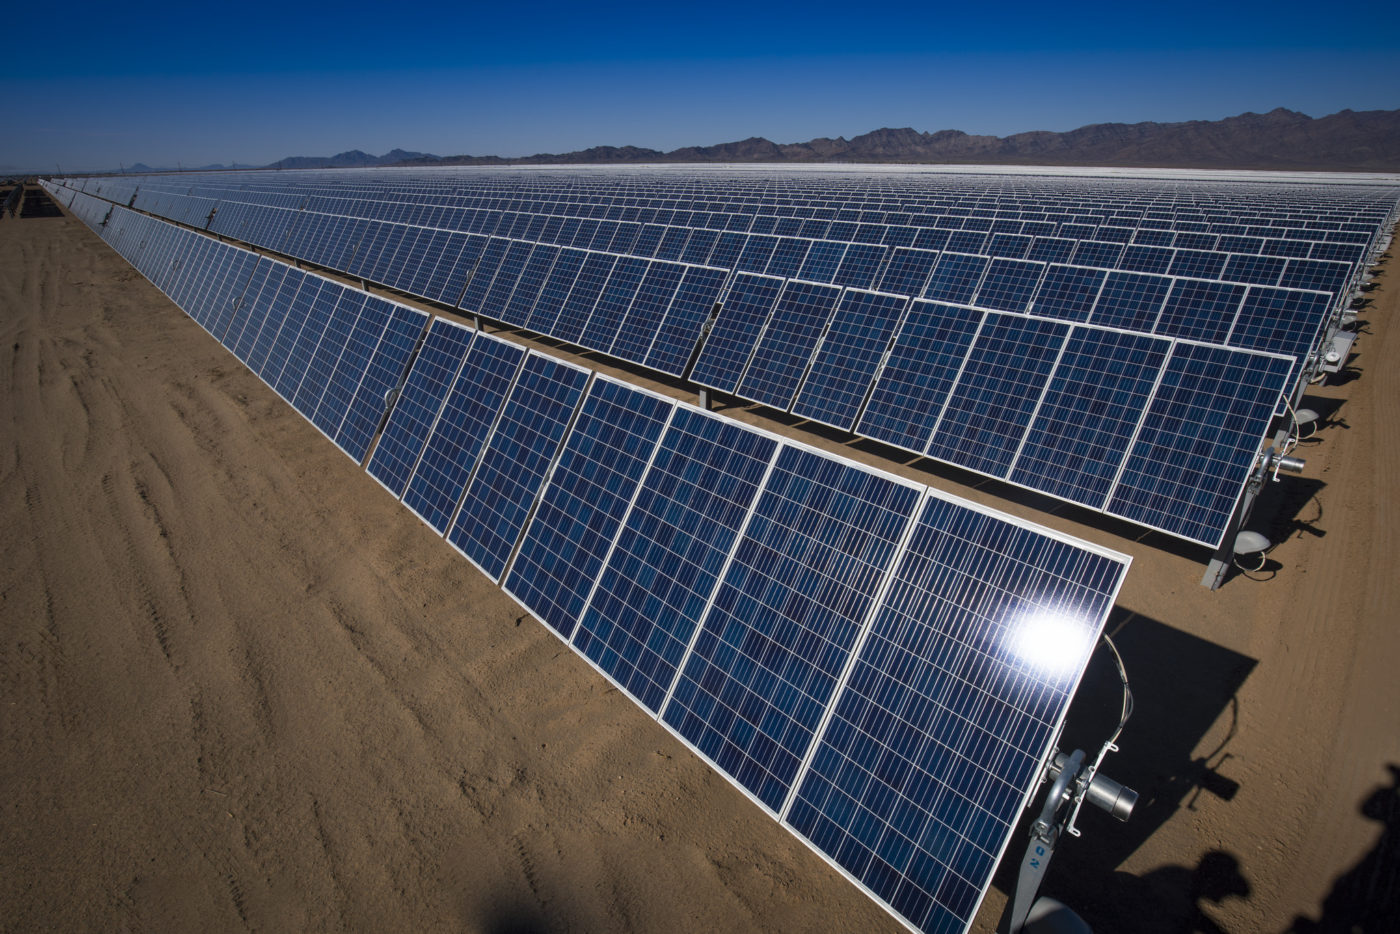 需求是燃煤電廠兩倍，IEA 點出太陽能產業對銅的依賴